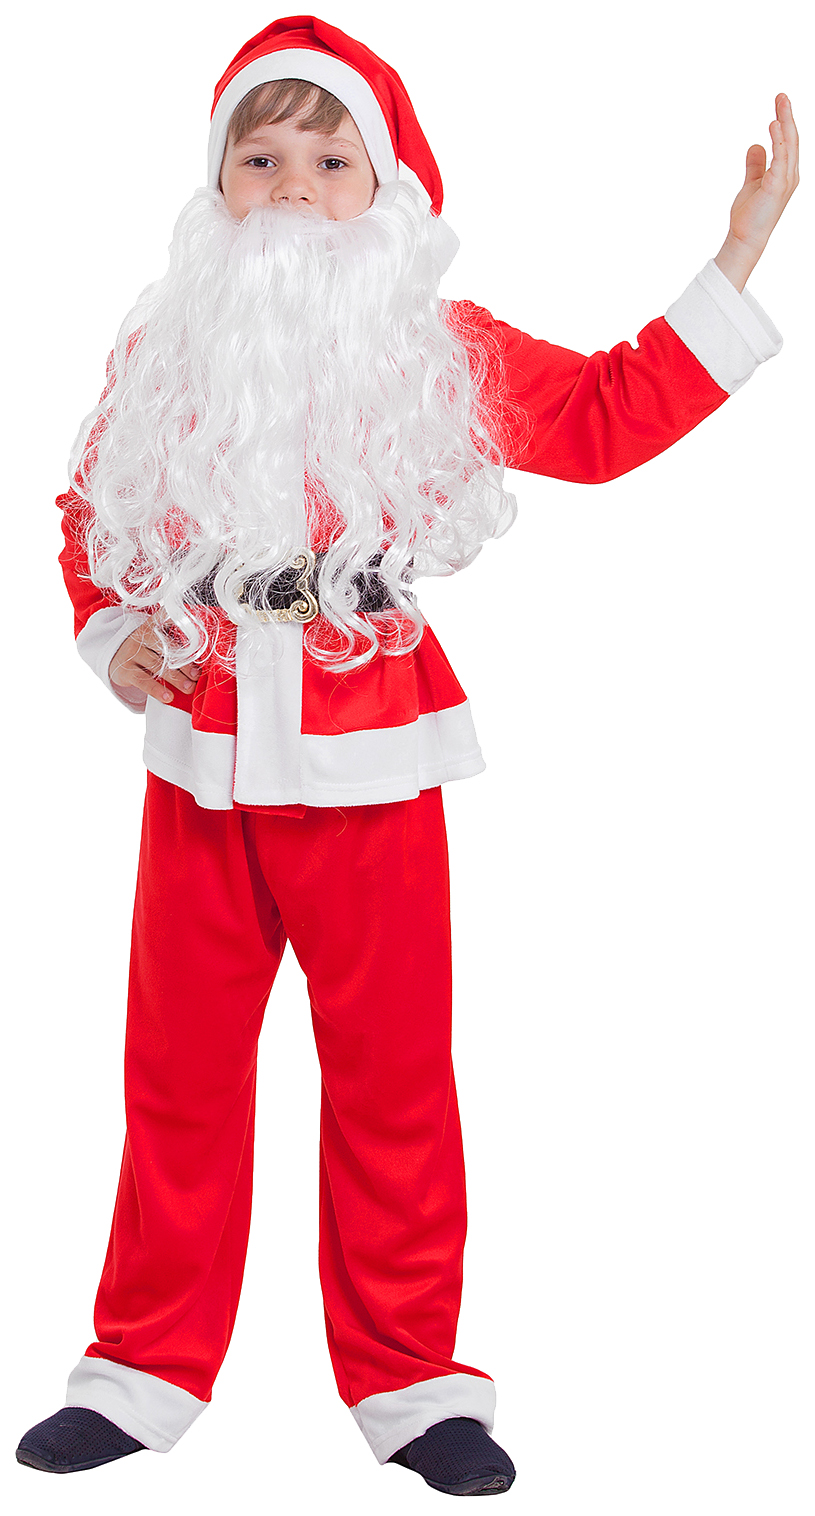 Детский карнавальный костюм Санта-Клаус, колпак, куртка, штаны, борода, р-р 30, 110-116 см